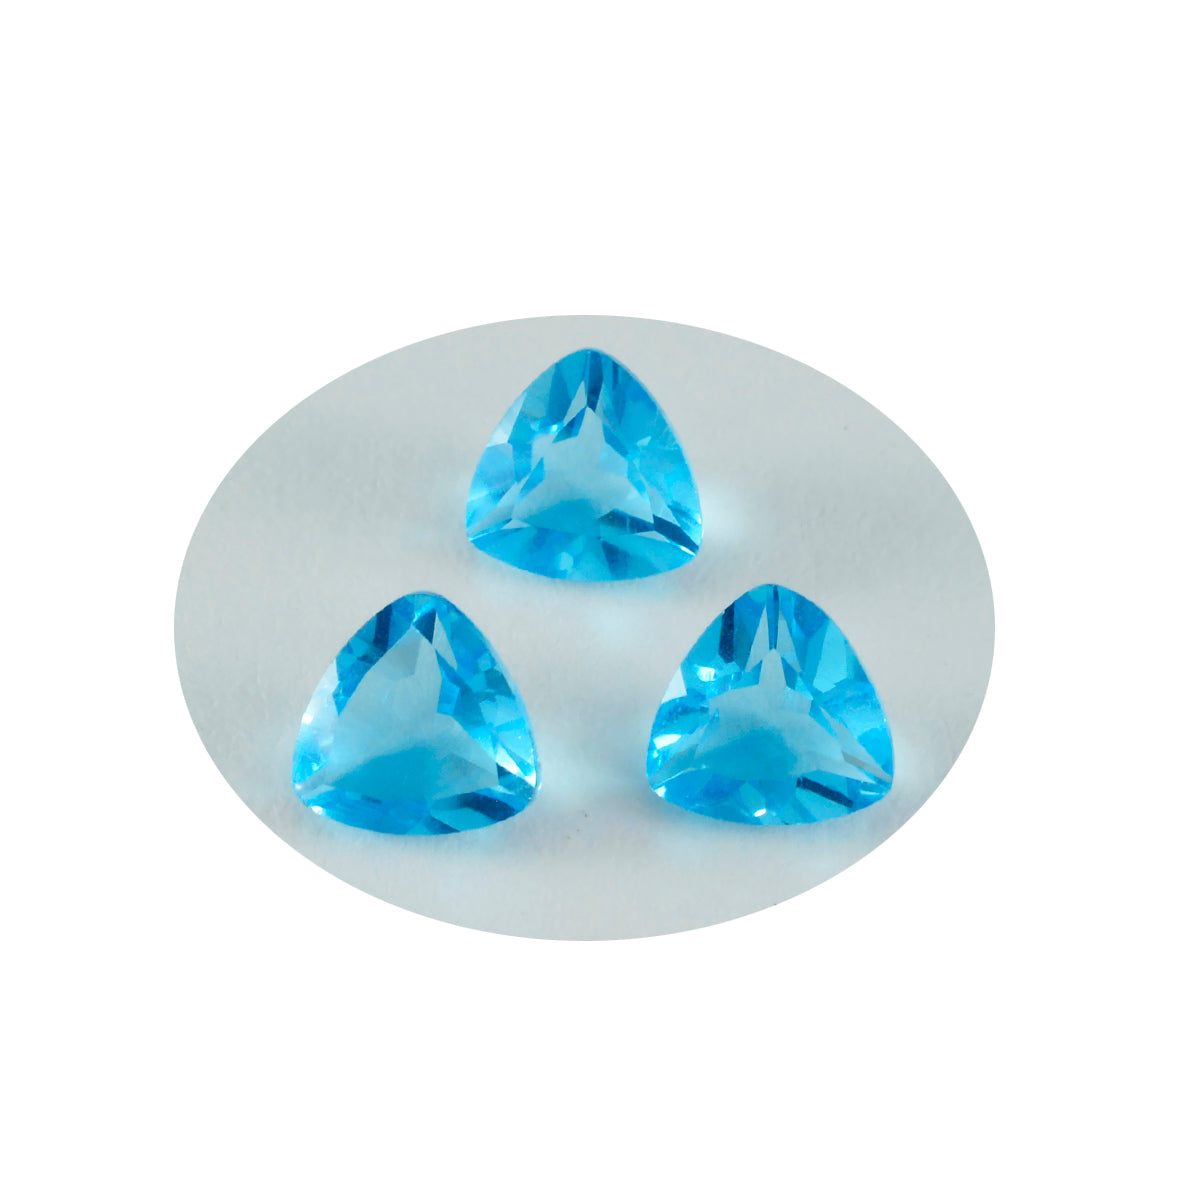 Riyogems 1 pièce de topaze bleue cz à facettes 10x10mm en forme de trillion, pierres précieuses de qualité impressionnante